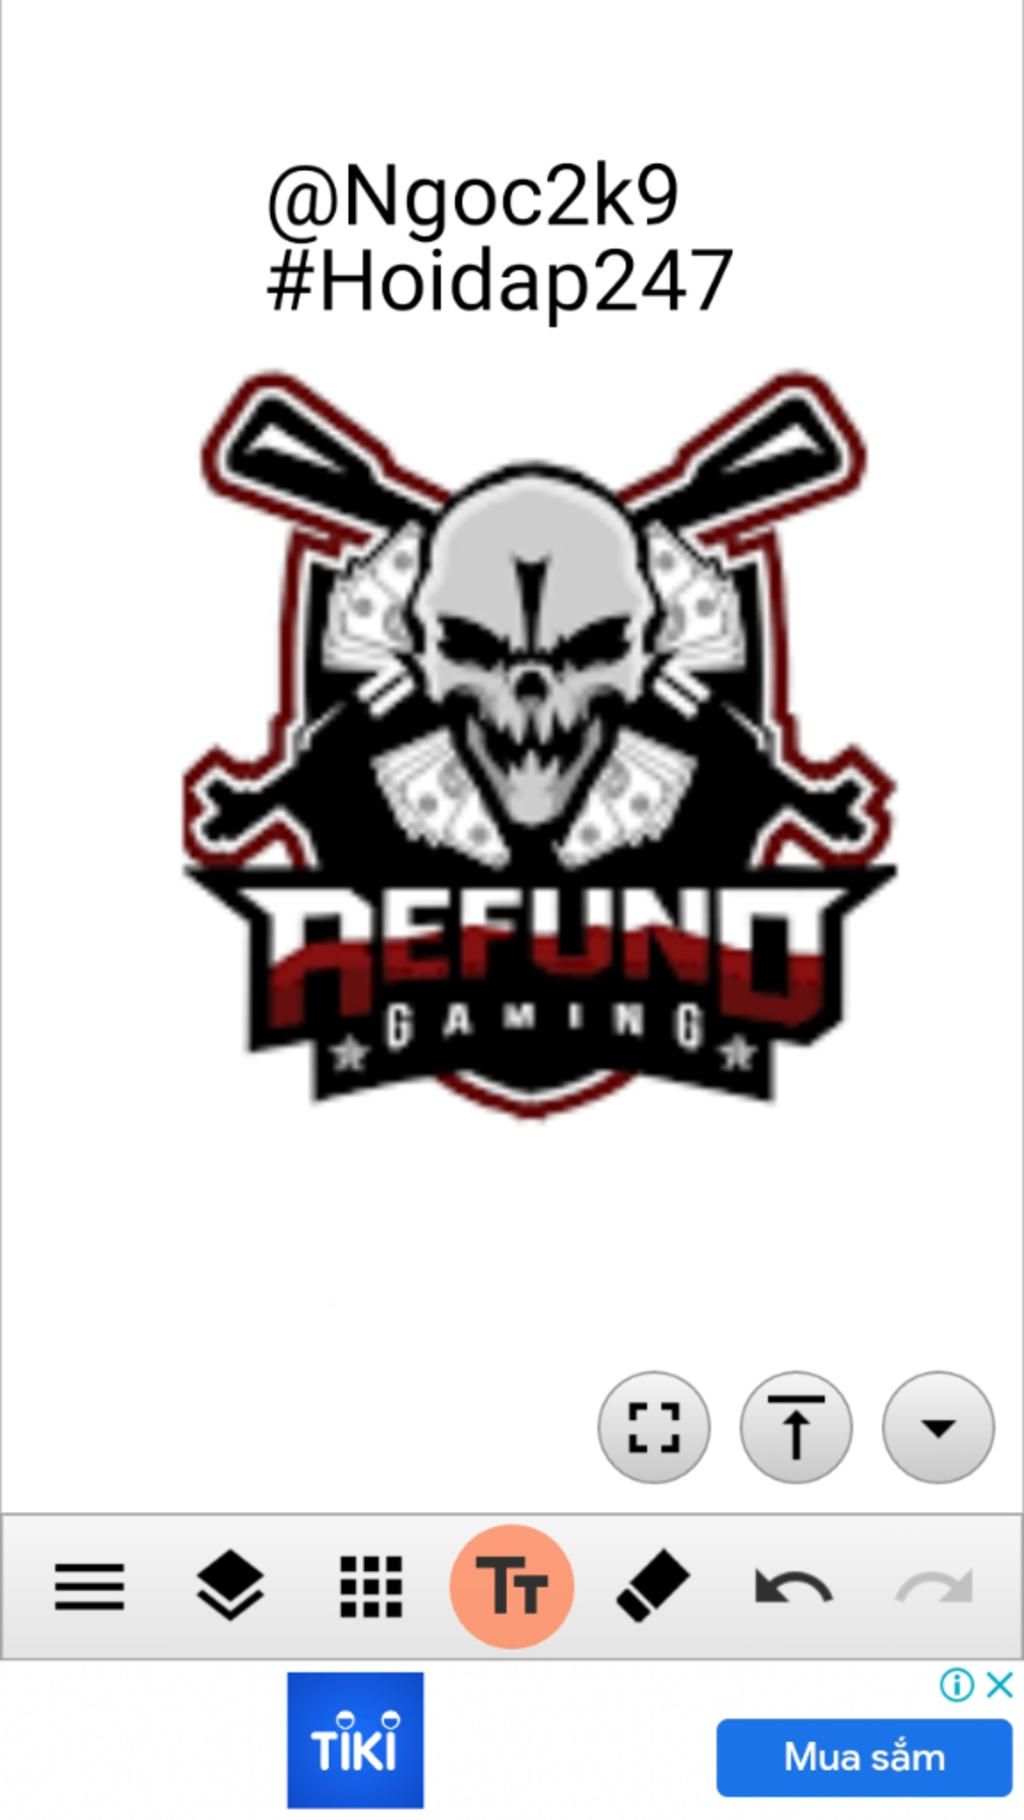 logo của REFUND Gaming: Logo của Refund Gaming đại diện cho sự uy tín và chuyên nghiệp. Chúng tôi cam kết hoàn tiền 100% nếu bạn không hài lòng với sản phẩm game mà bạn đã mua. Hãy đến với chúng tôi và cùng thưởng thức những trò chơi HOT nhất hiện nay mà không lo lắng về việc không thích sản phẩm của mình.